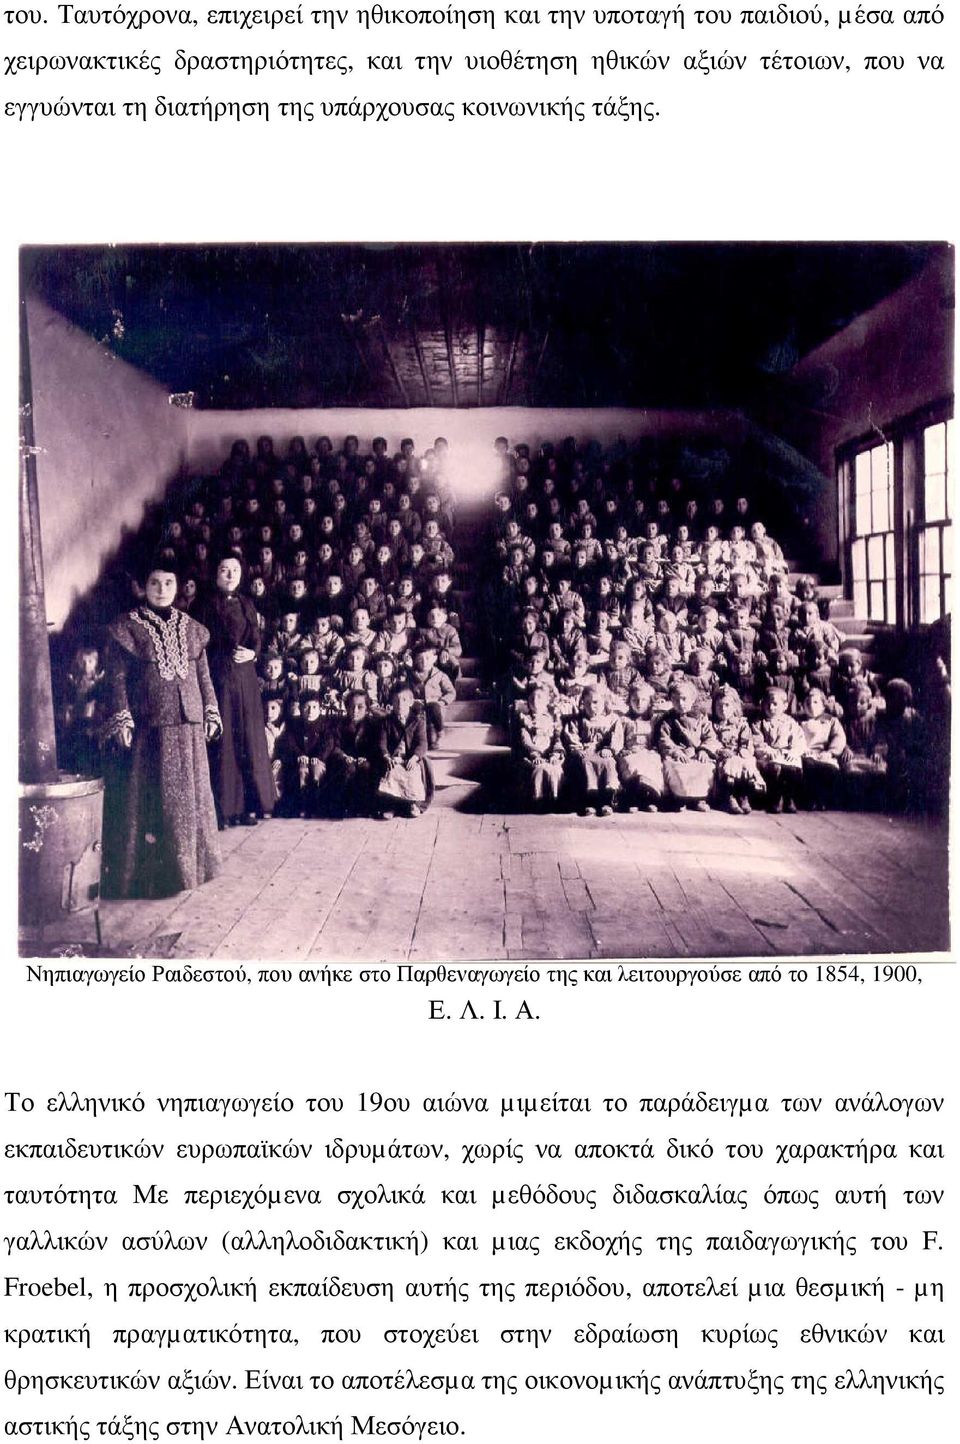 Το ελληνικό νηπιαγωγείο του 19ου αιώνα µιµείται το παράδειγµα των ανάλογων εκπαιδευτικών ευρωπαϊκών ιδρυµάτων, χωρίς να αποκτά δικό του χαρακτήρα και ταυτότητα Με περιεχόµενα σχολικά και µεθόδους